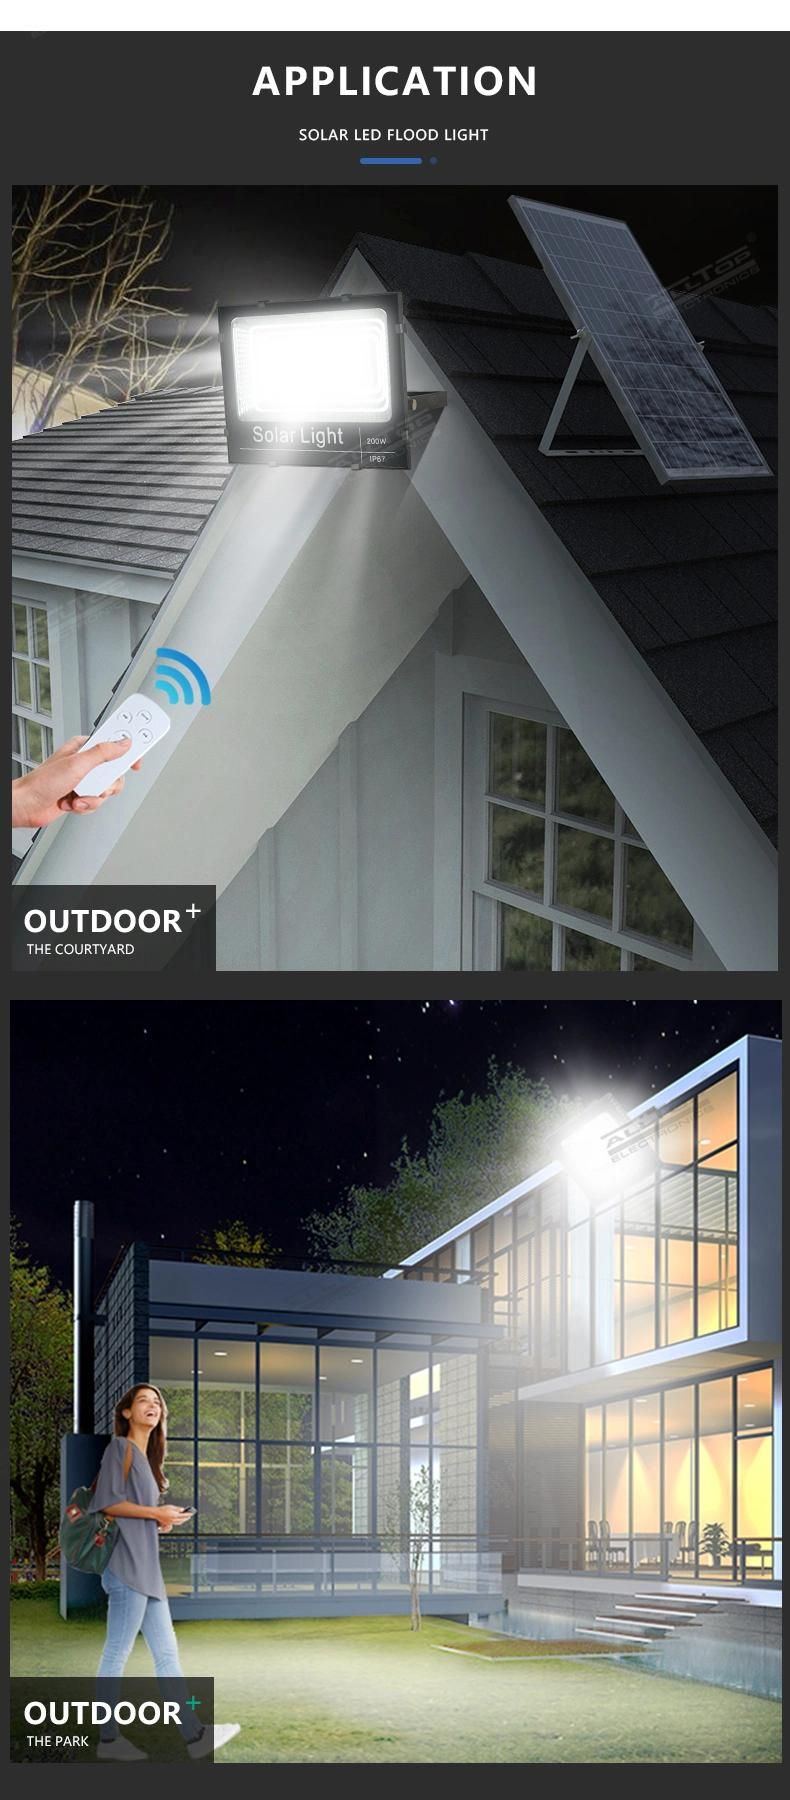 Alltop High Power IP65 Waterproof 25W 40W 60W 100W 200W 300W Garden Outdoor Solar LED Flood Light